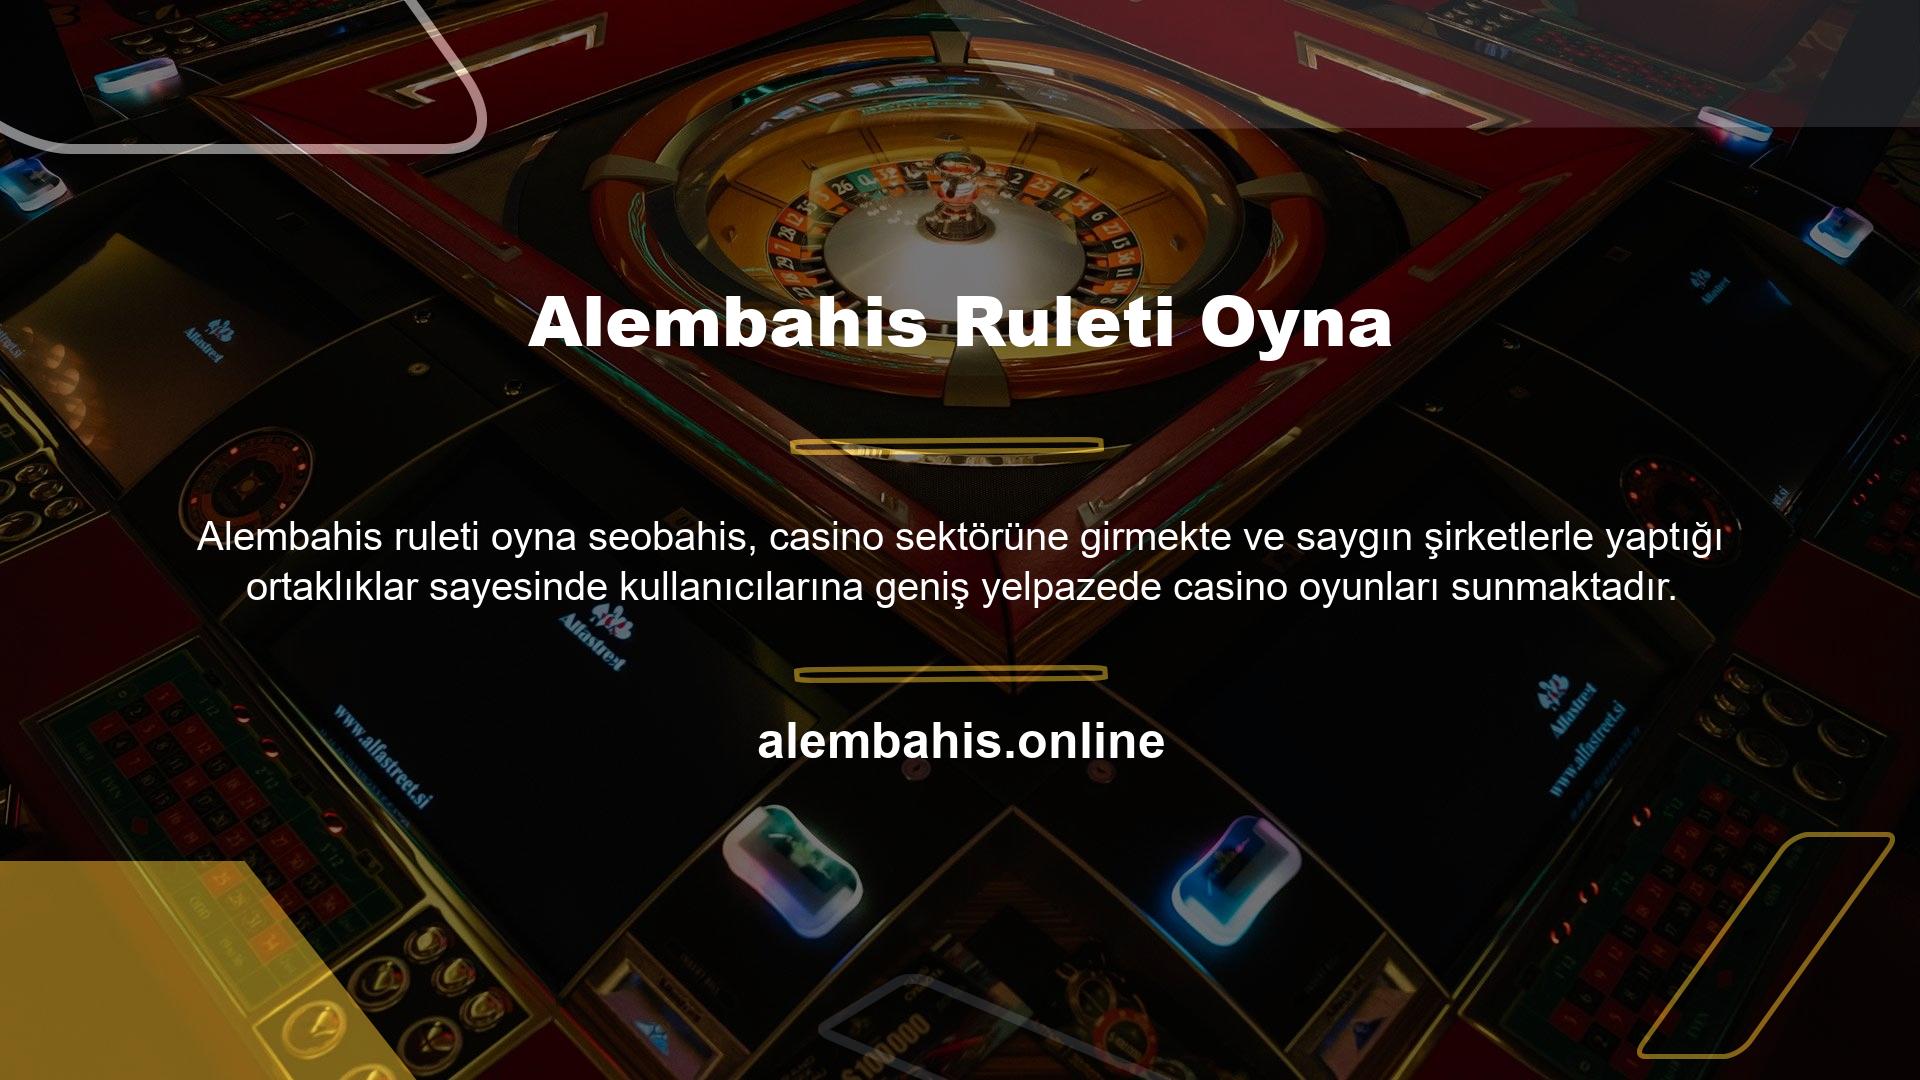 Casino oyunlarının alternatiflerinden biri olan rulet oldukça ilgi görüyor ve oyuna ait video ve görsellerin paylaşılması kullanıcıların kazanmasına yardımcı olabiliyor